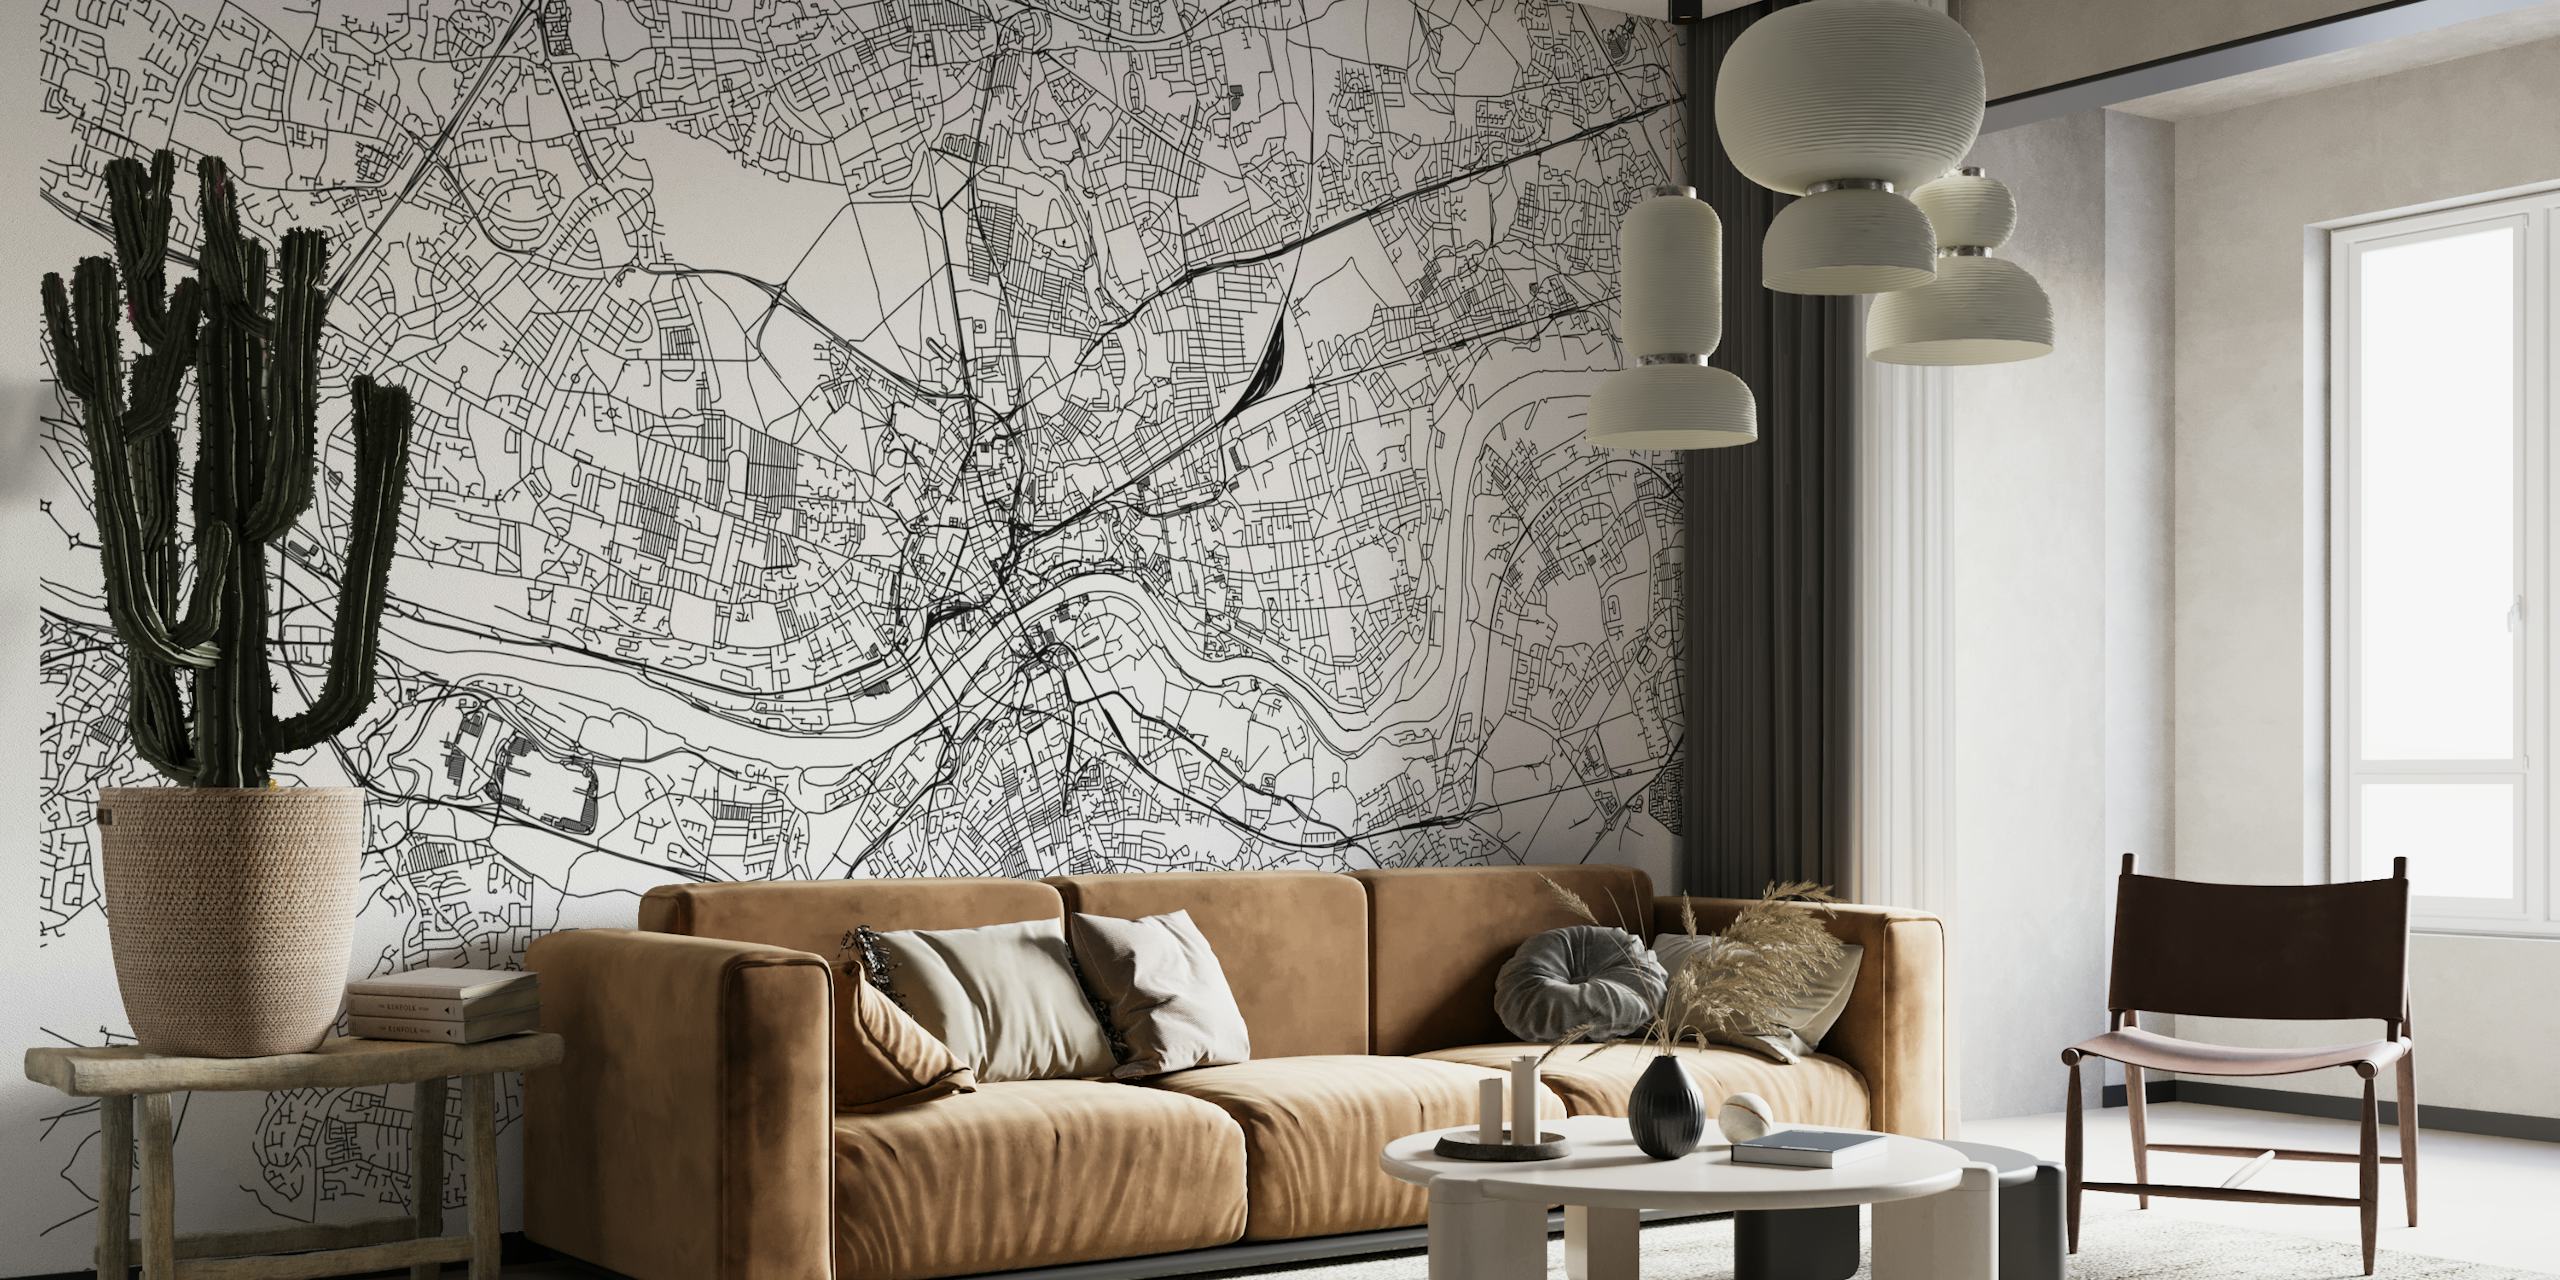 Mural de pared con el mapa de la ciudad de Newcastle que muestra calles y puntos de referencia